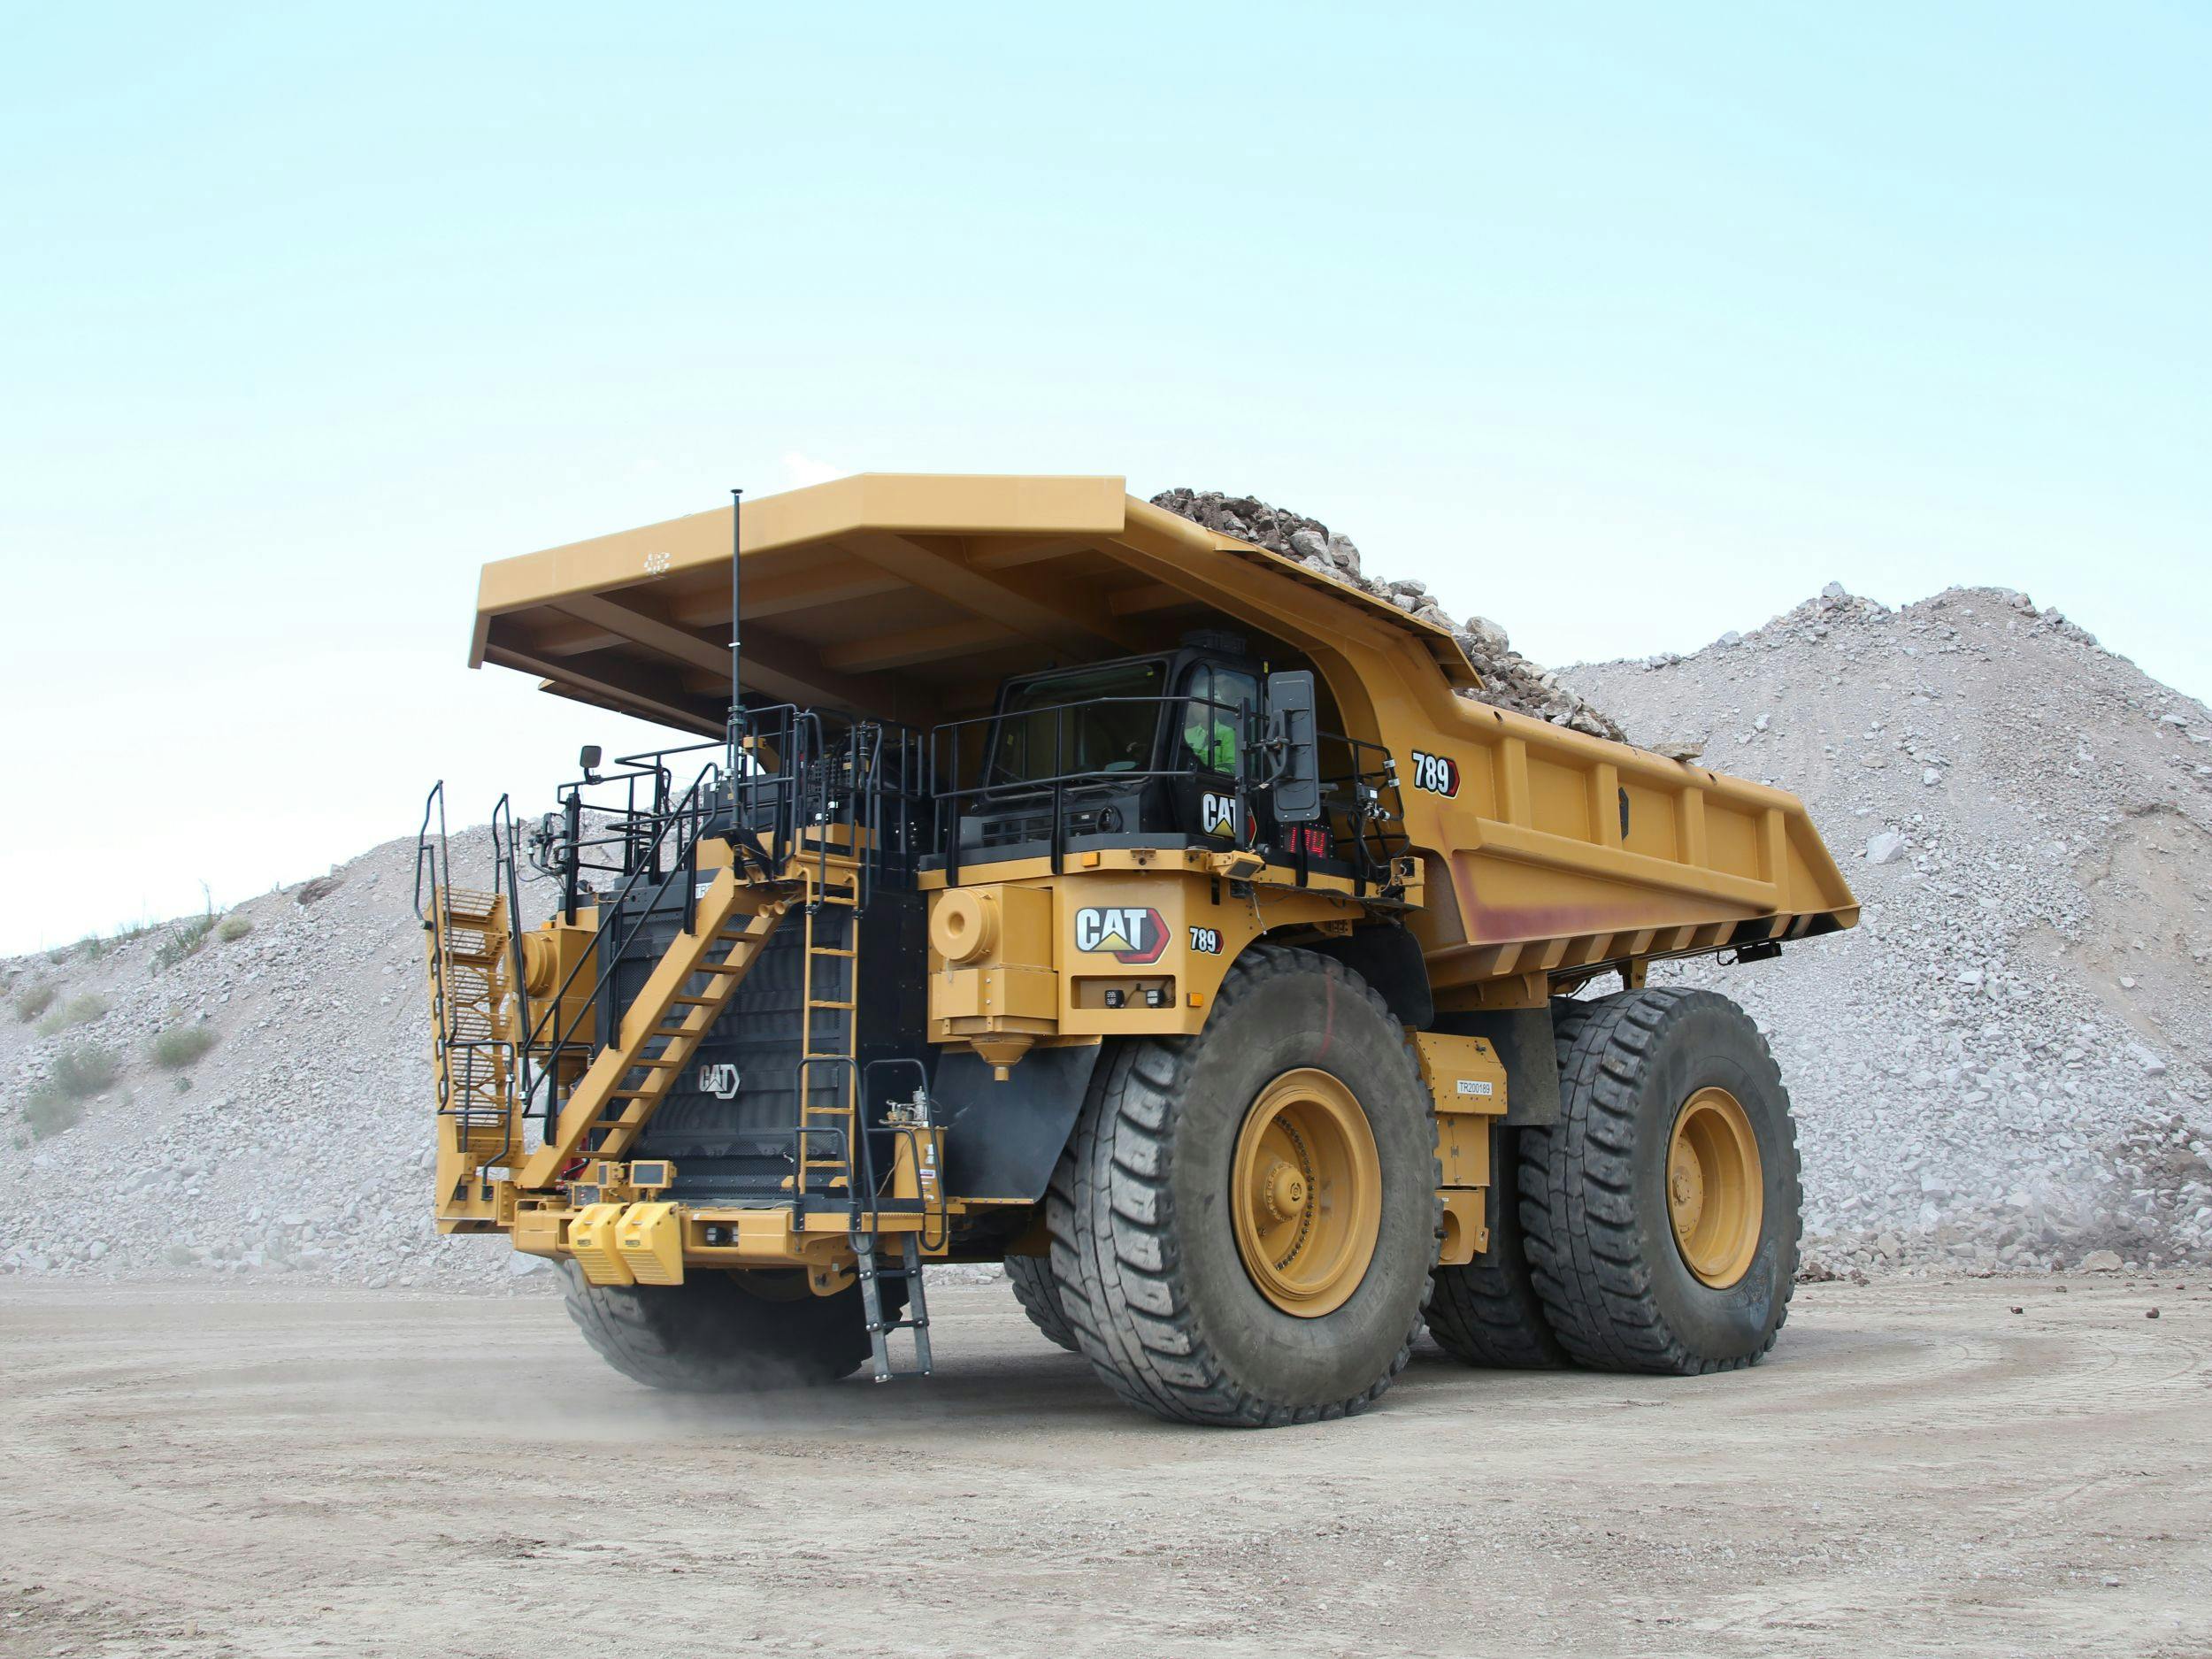 Cat 789 Mining Truck